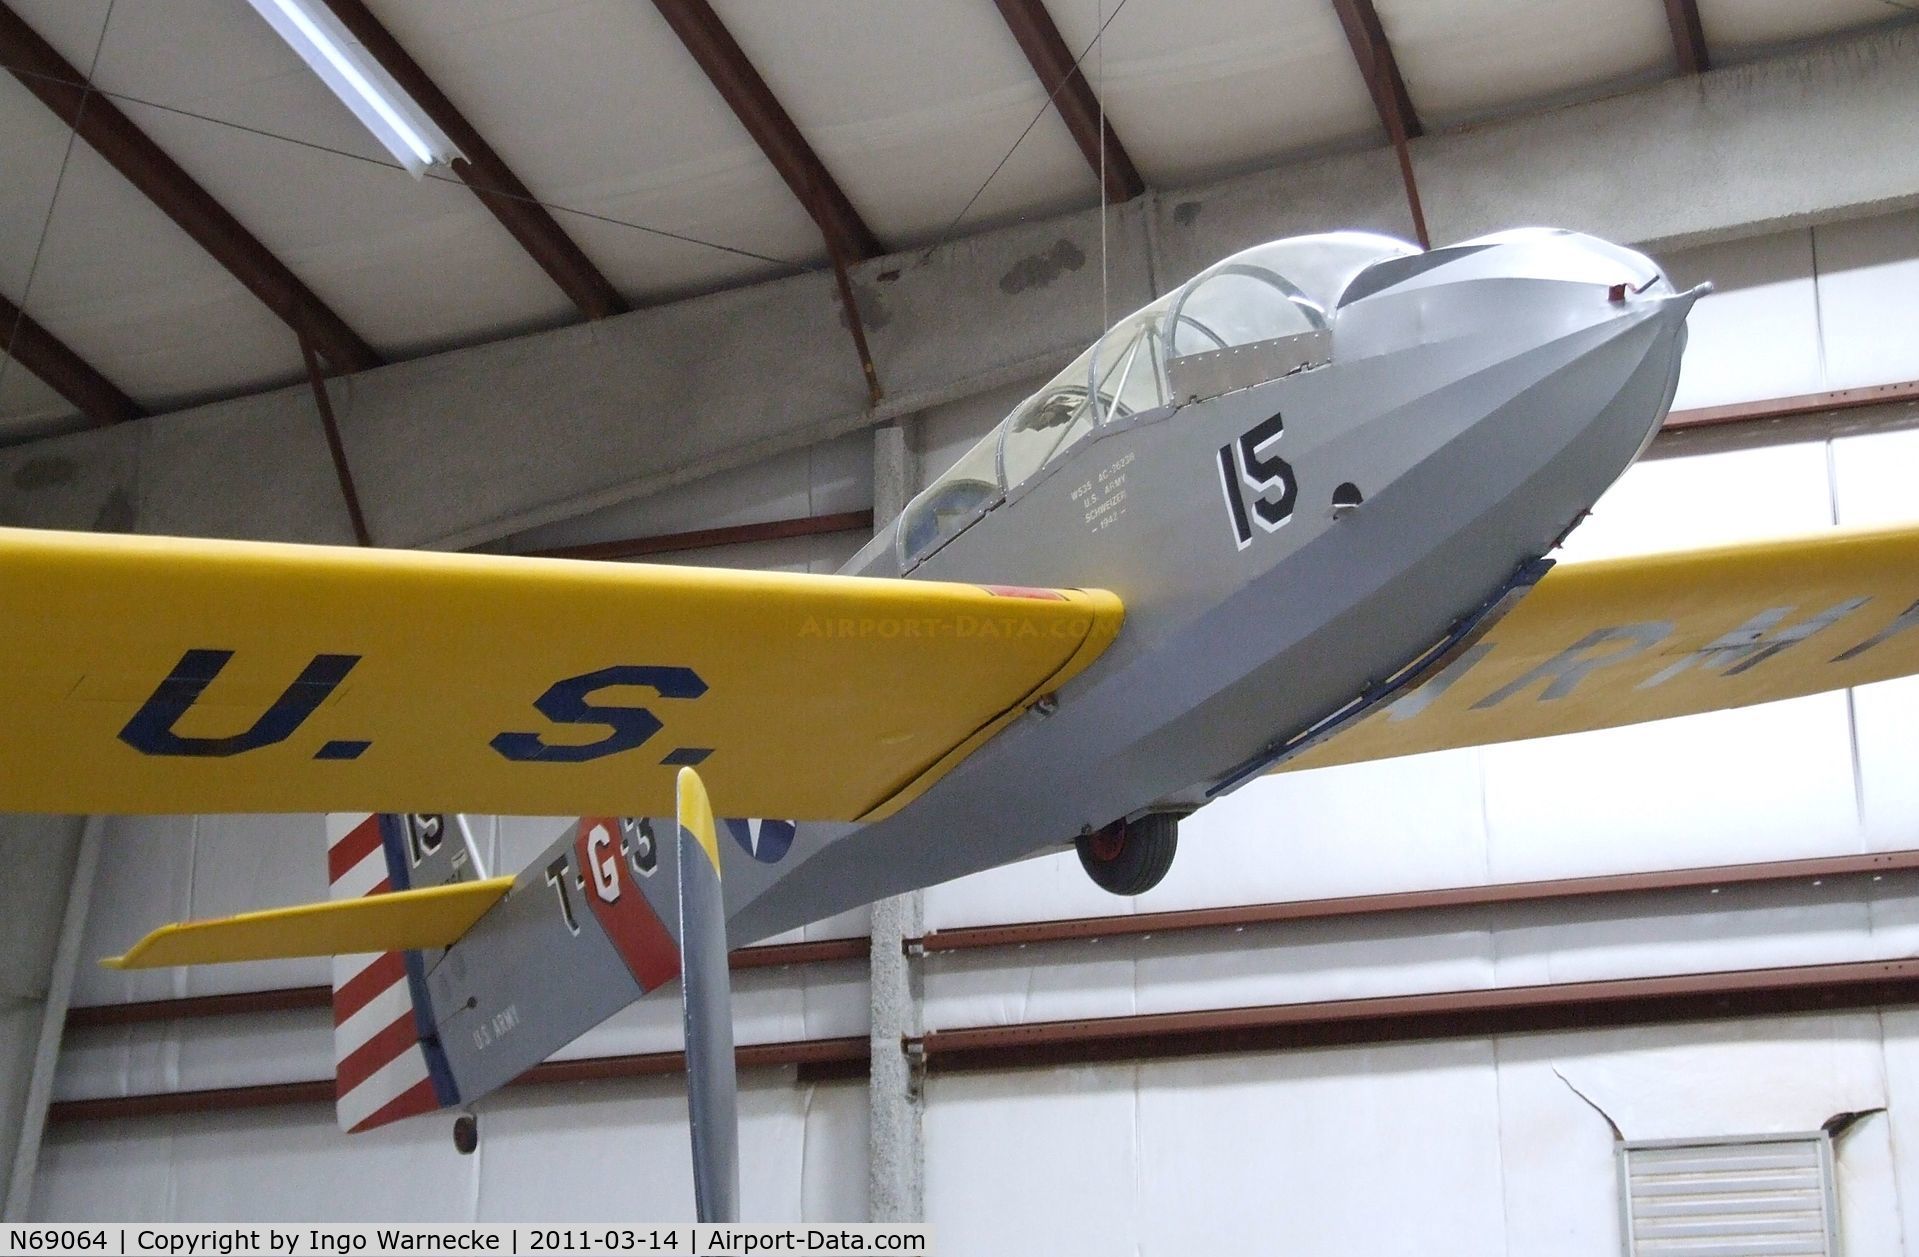 N69064, Schweizer TG-3A C/N 15, Schweizer TG-3A at the Pima Air & Space Museum, Tucson AZ